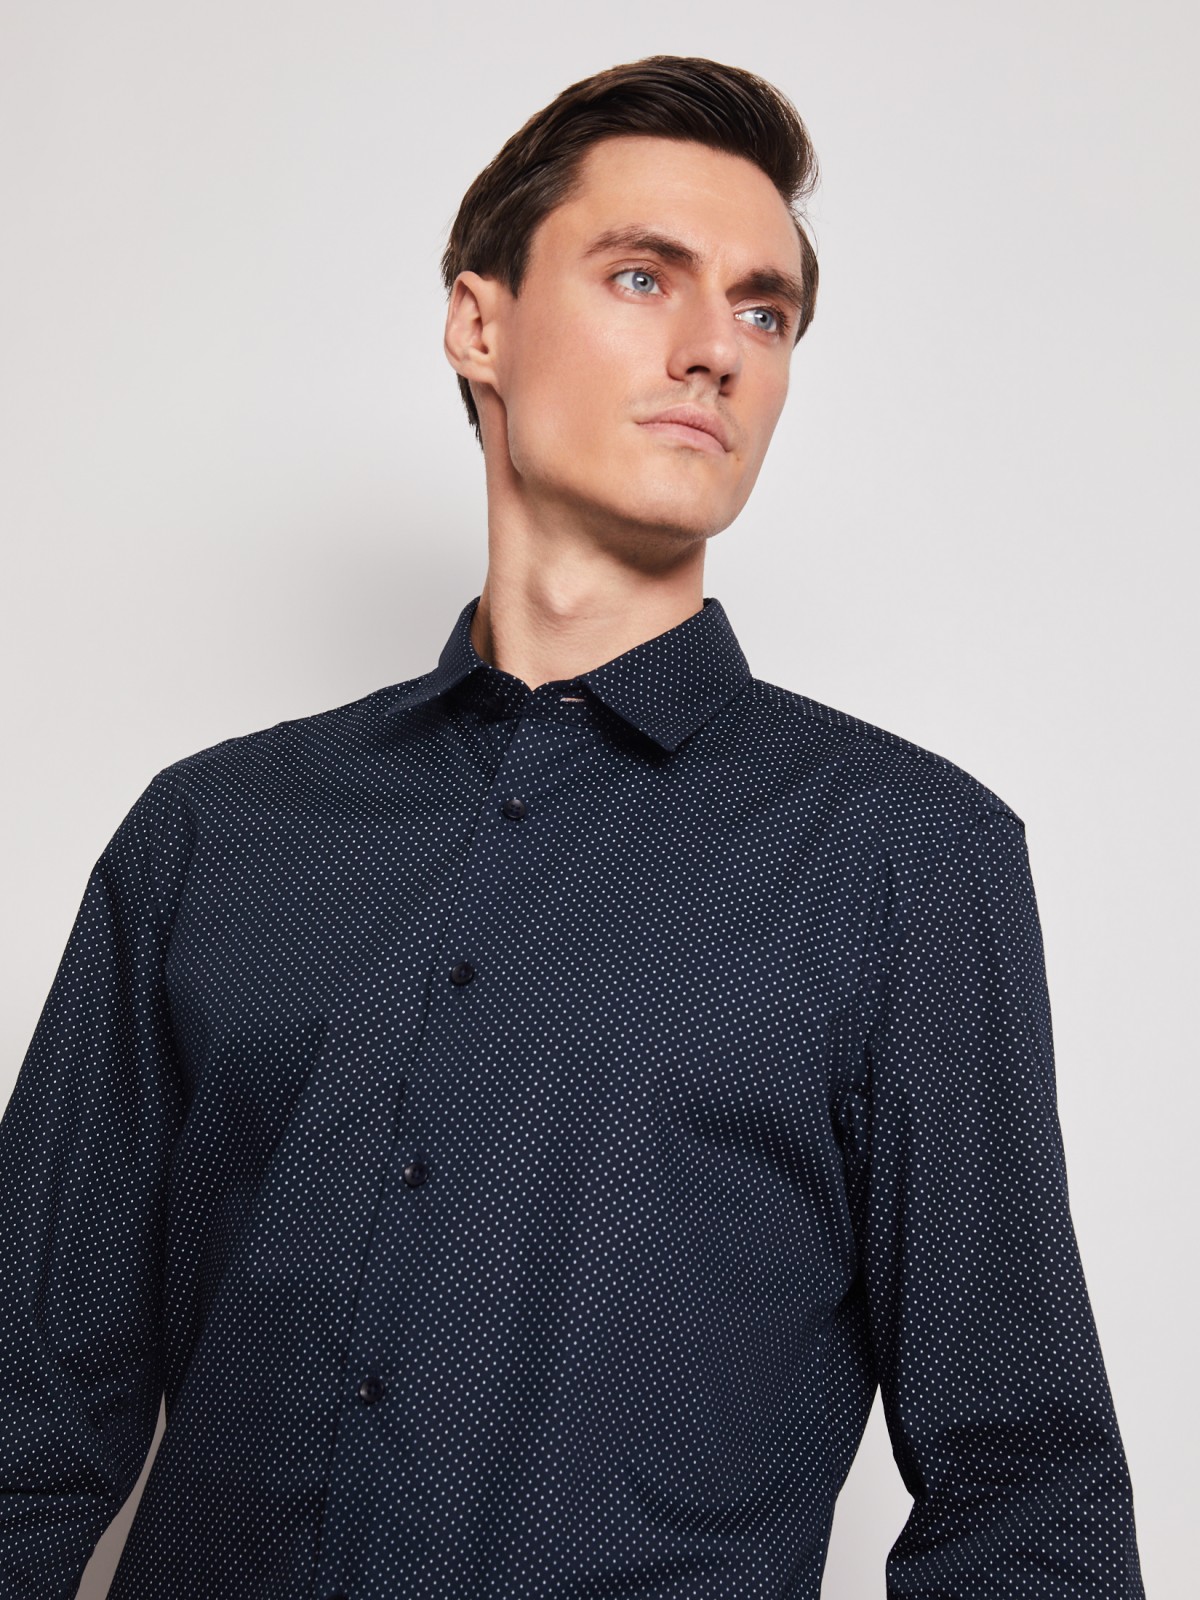 Рубашка в горошек с длинным рукавом zolla 012112162032, цвет темно-синий, размер S - фото 2